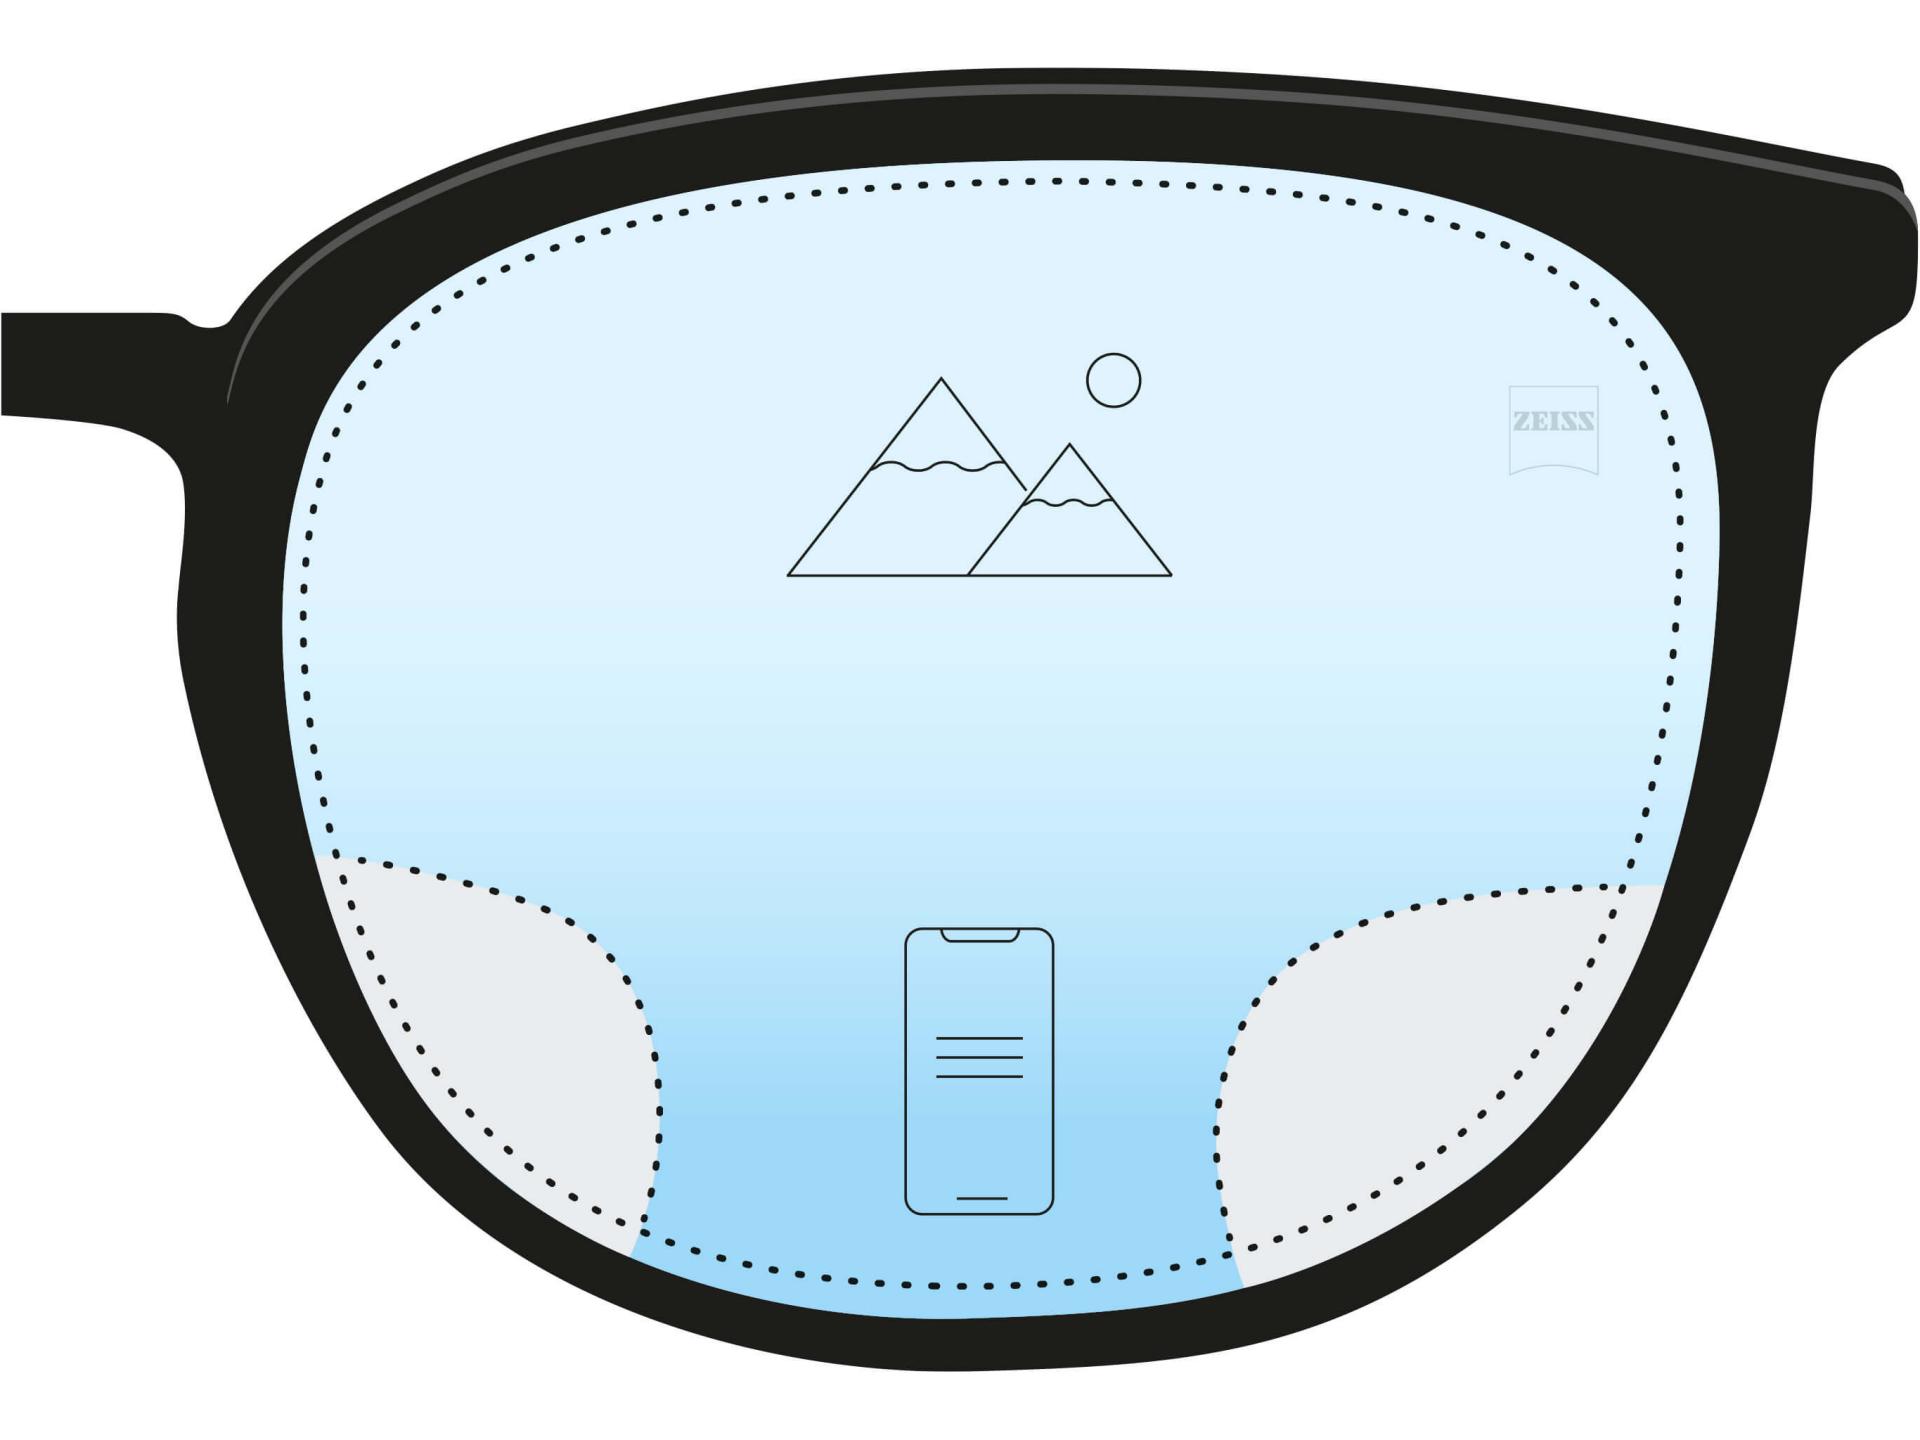 En illustrasjon at en anti-tretthetsglass. To ikoner og en fargegradient fra mørkeblått nederst til lyseblått øverst indikerer at det største området av glasset har avstandsstyrke, men at det er et lite område nederst som hjelper synet på nært hold.